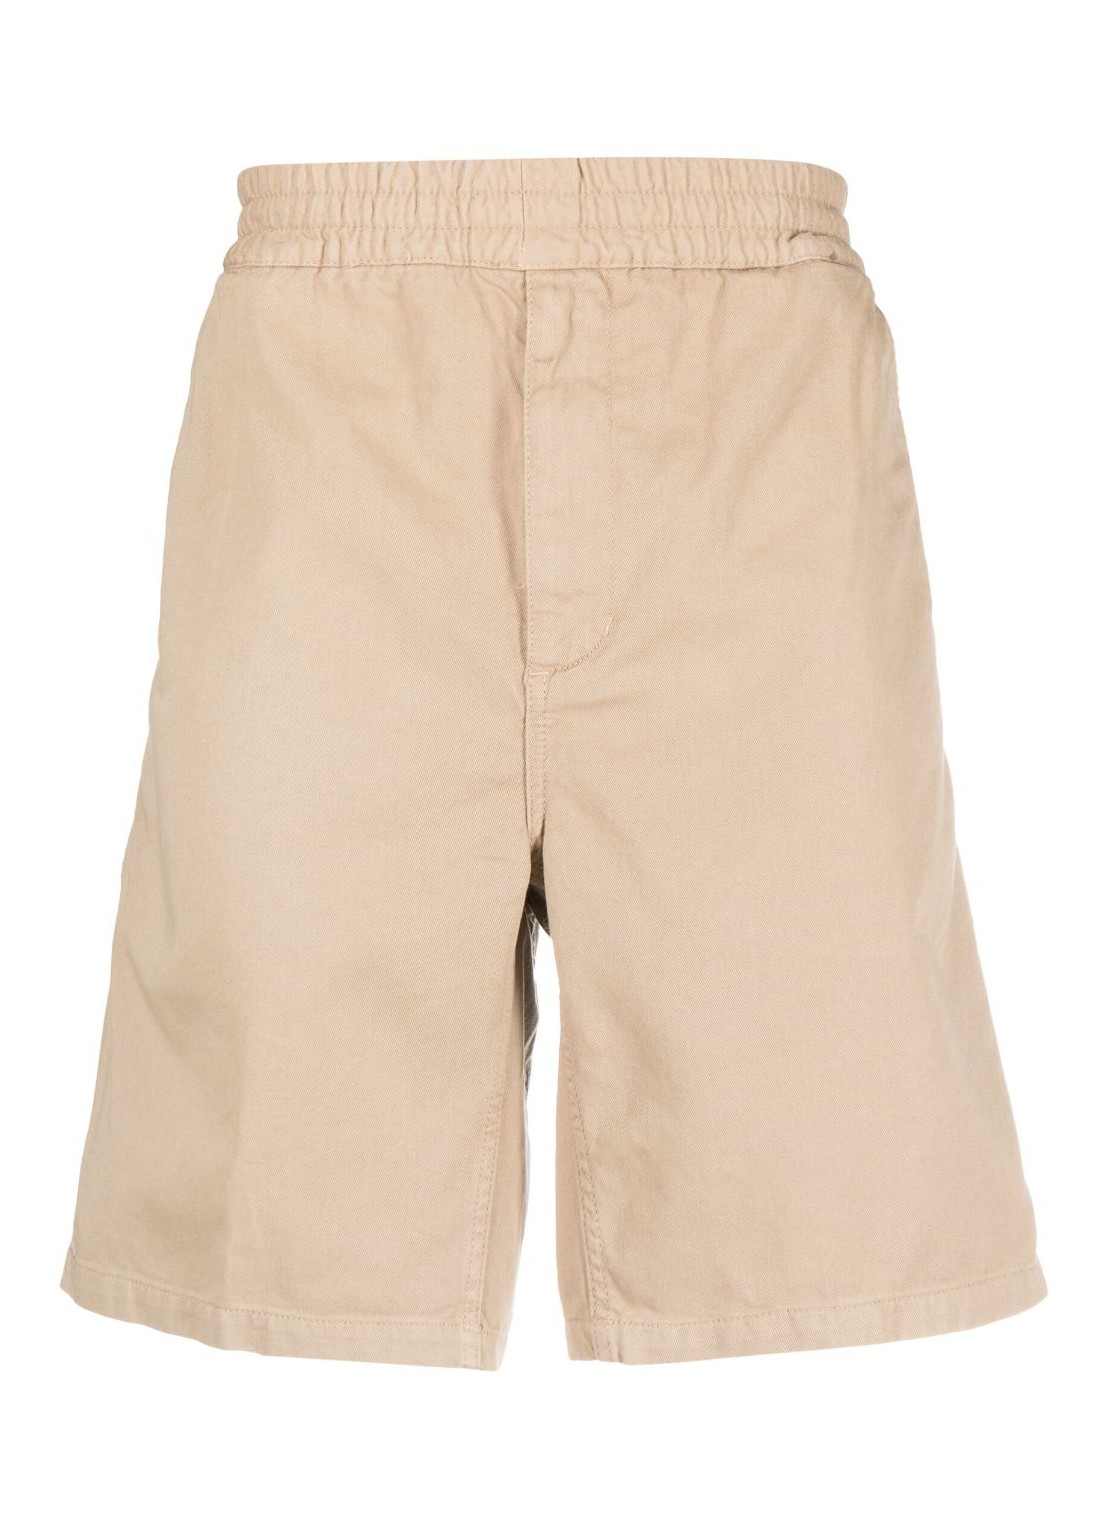 Pantalon corto carhartt short pant manflint short - i030480 g1gd talla S
 